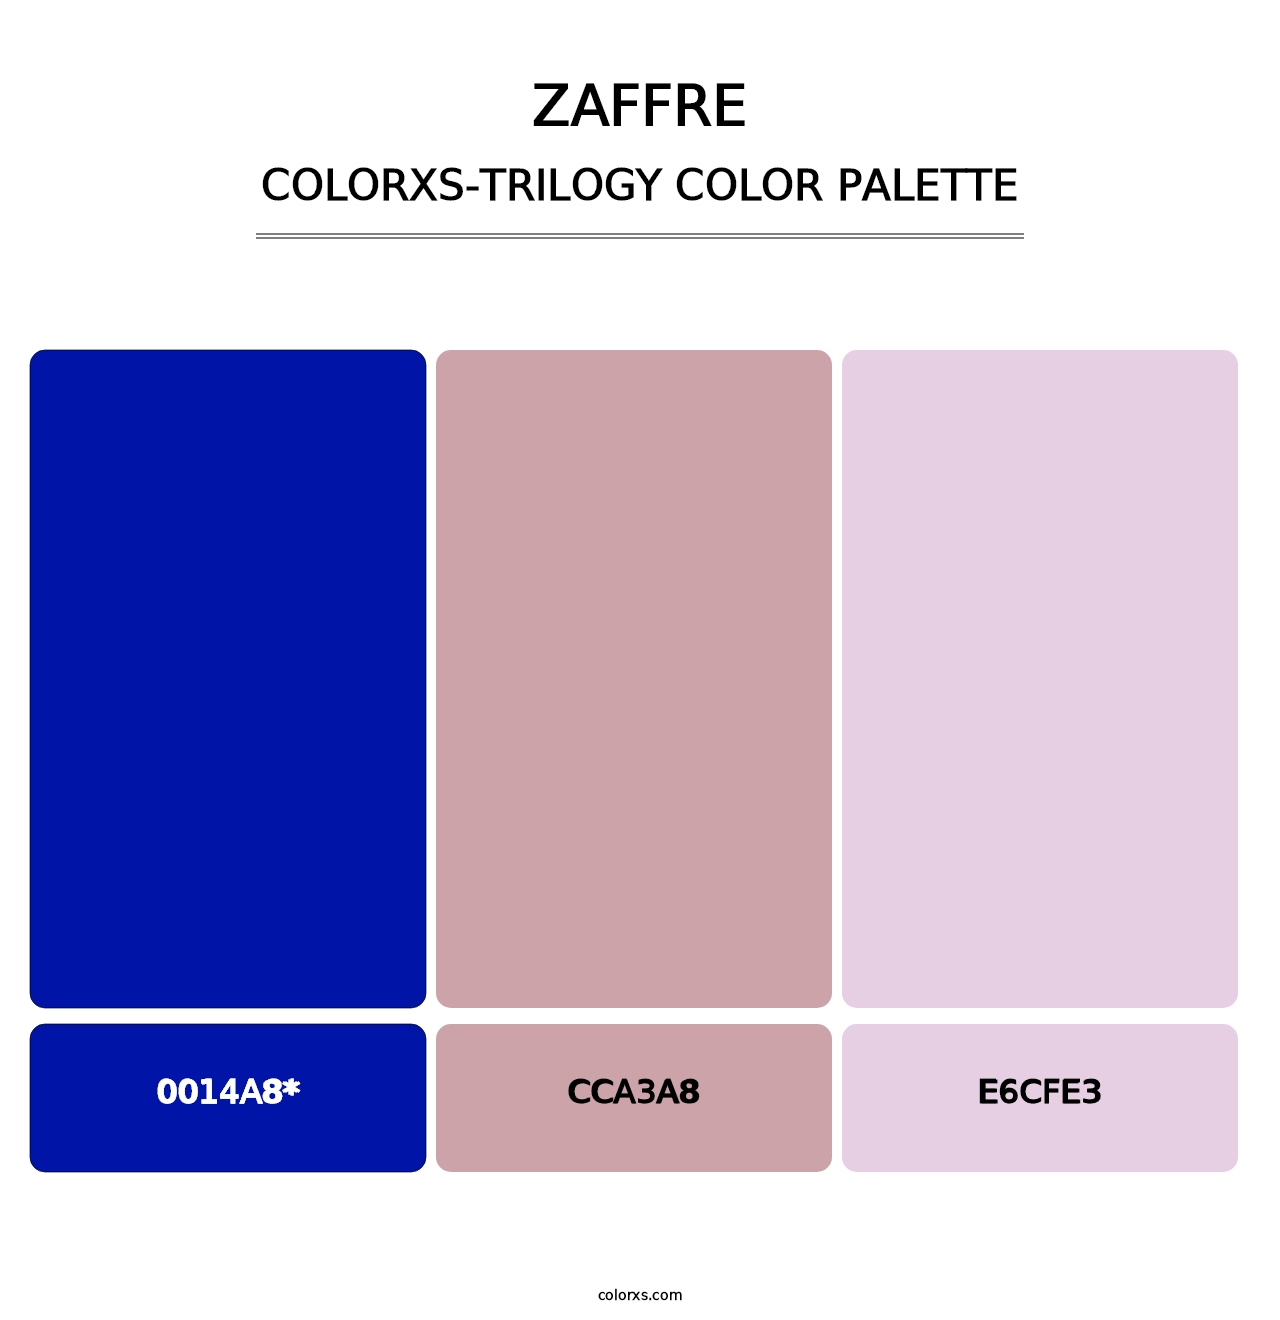 Zaffre - Colorxs Trilogy Palette